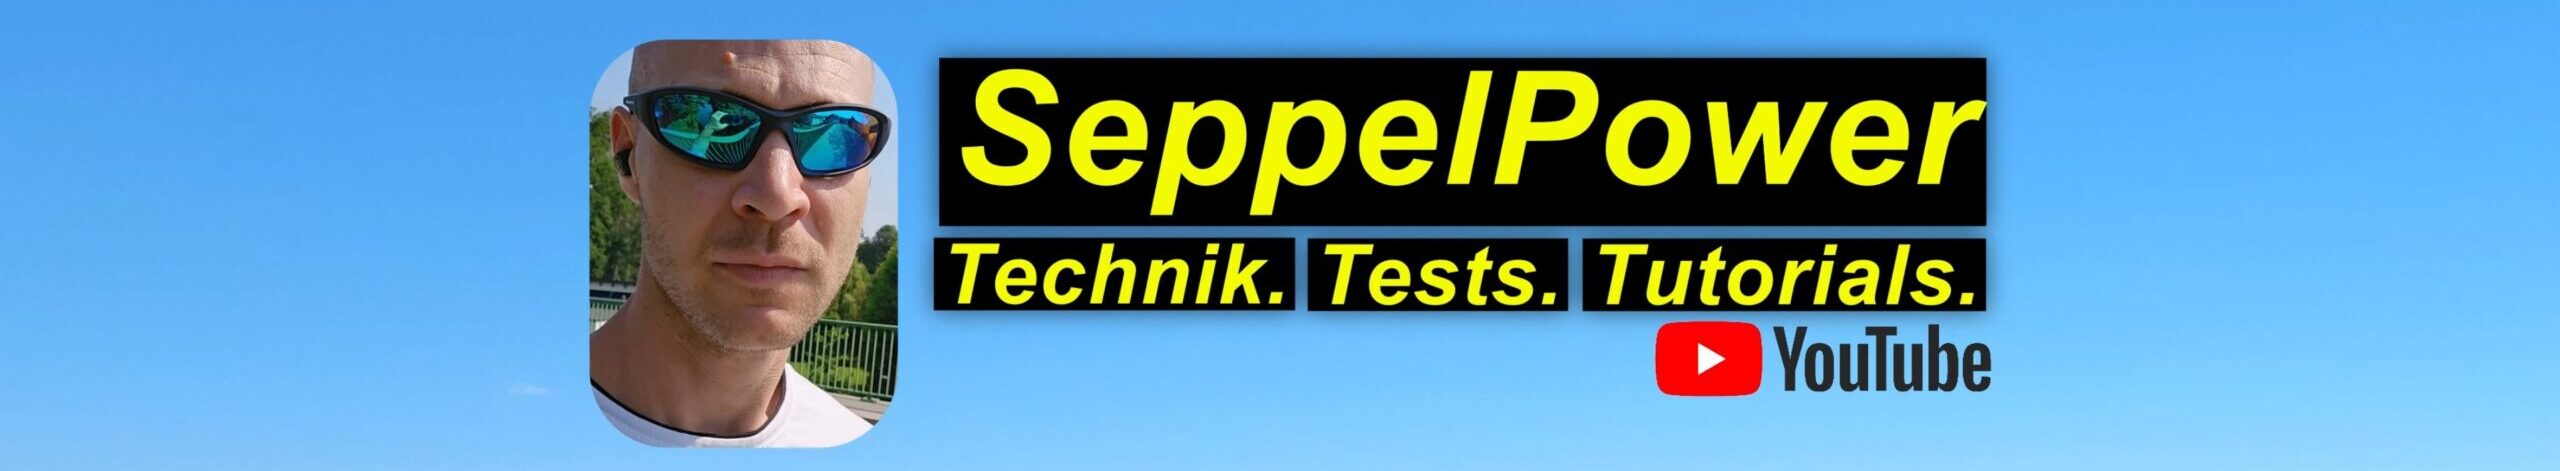 SeppelPower.de – Technik. Tests. Tutorials.